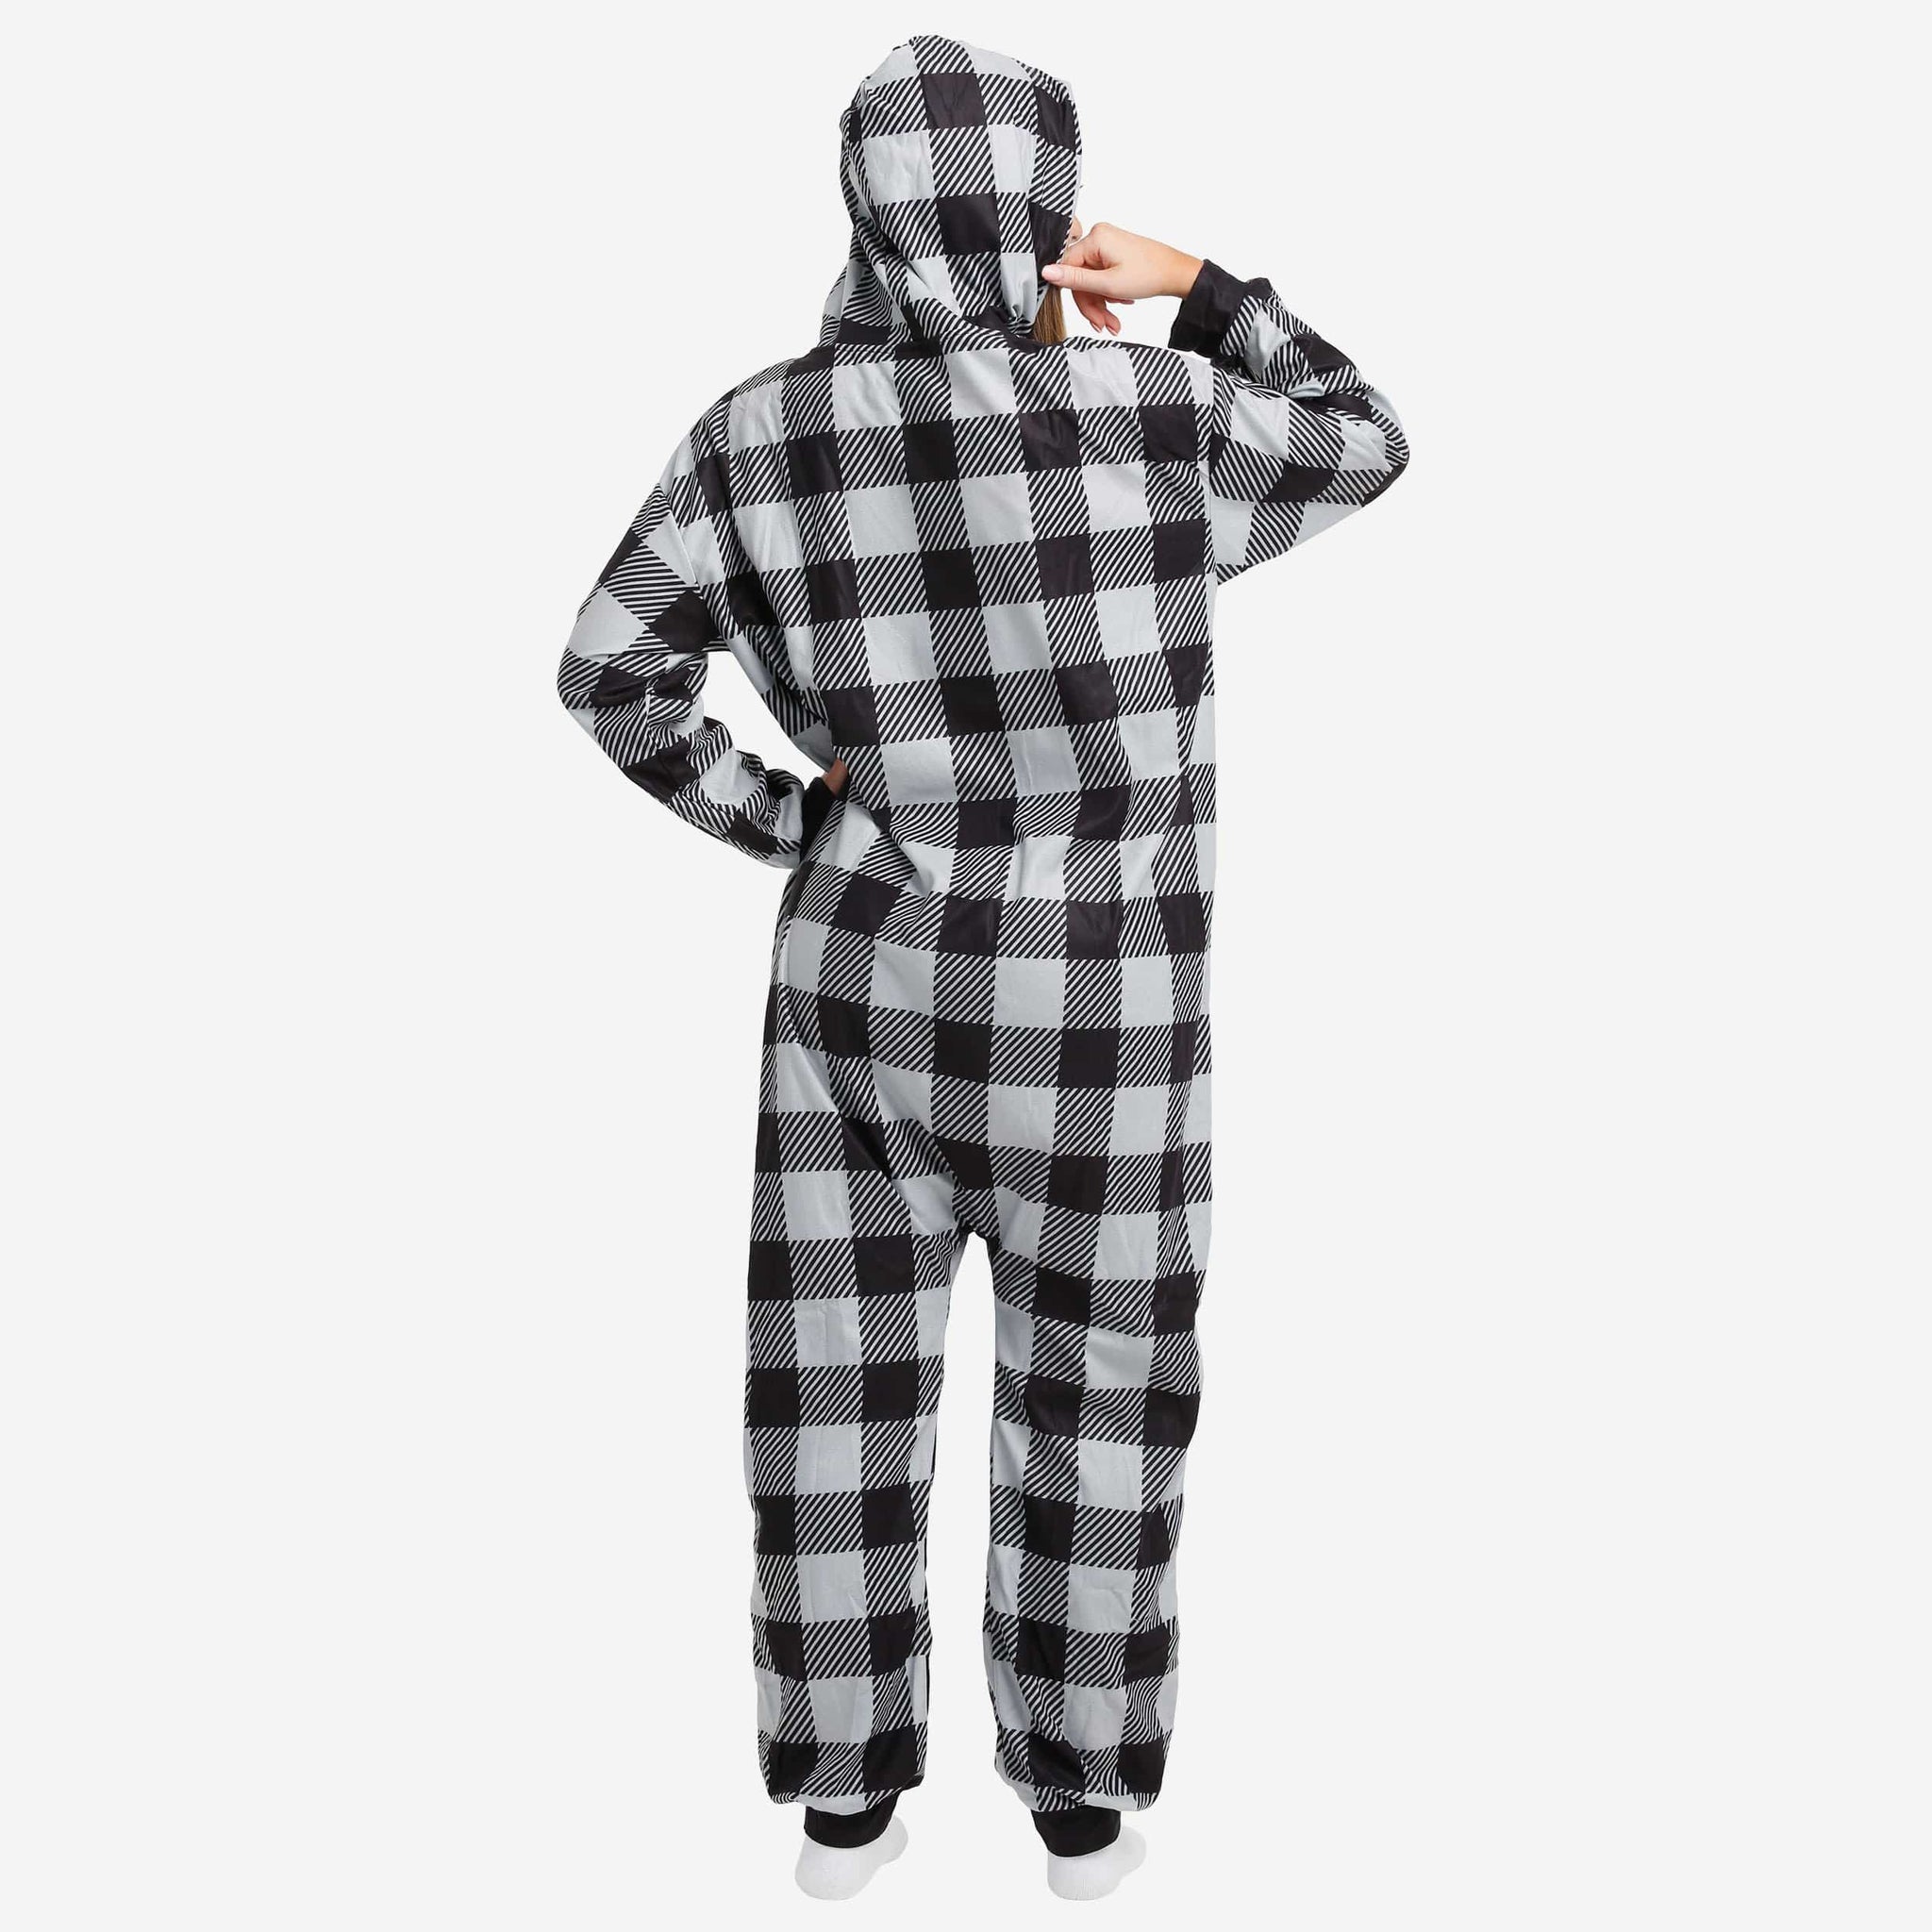 Las Vegas Raiders FOCO Women's Ugly Pajamas Set - Gray